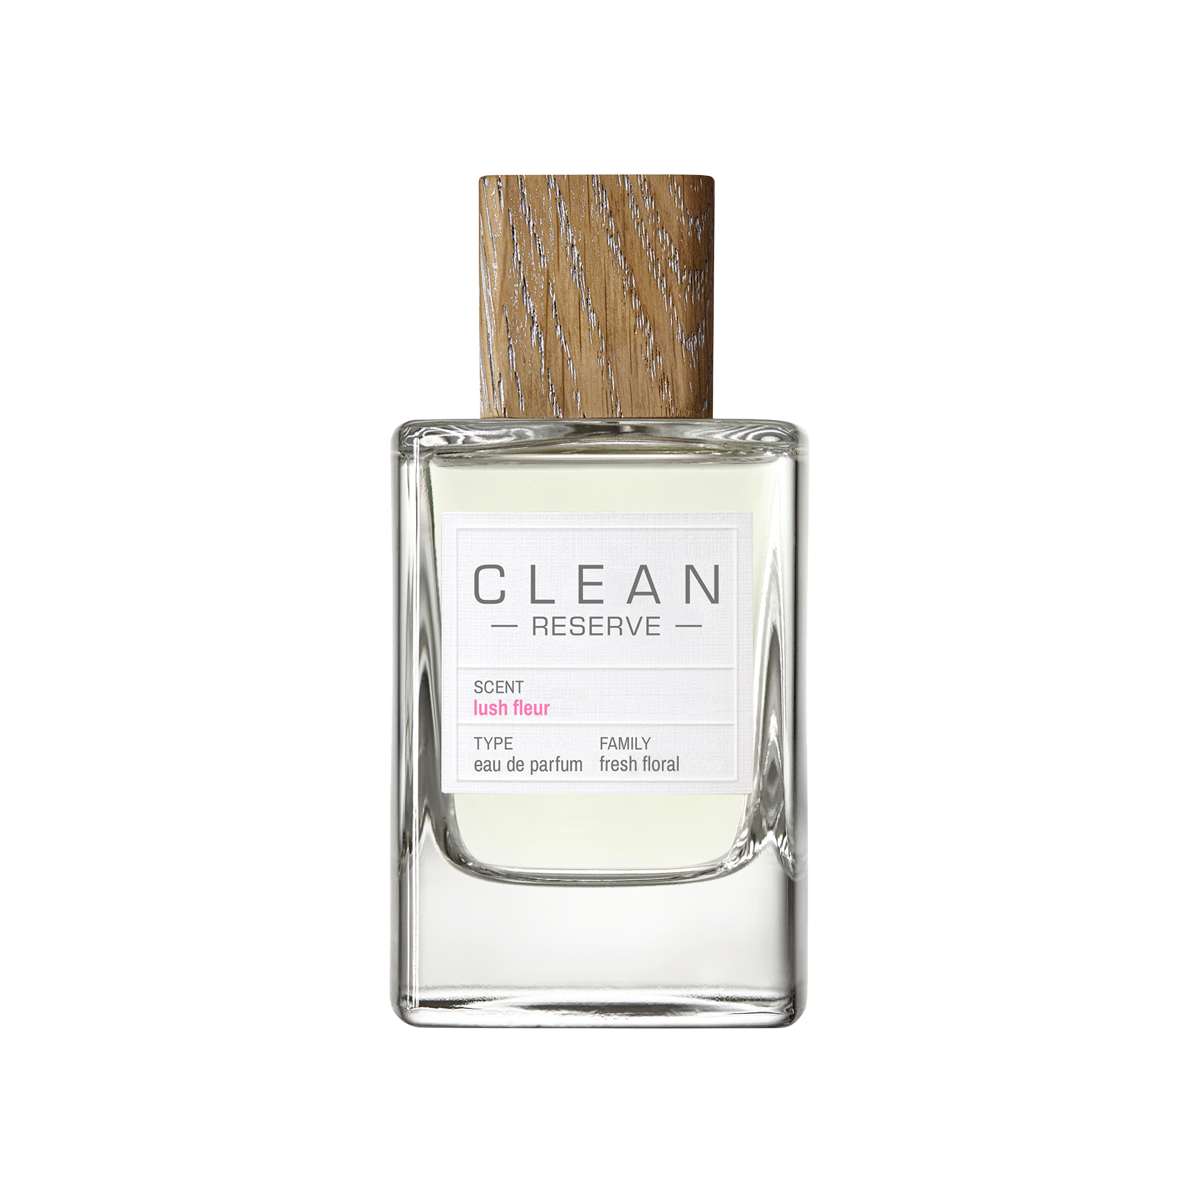 CLEAN BEAUTY - Clean Reserve Lush Fleur Eau de Parfum